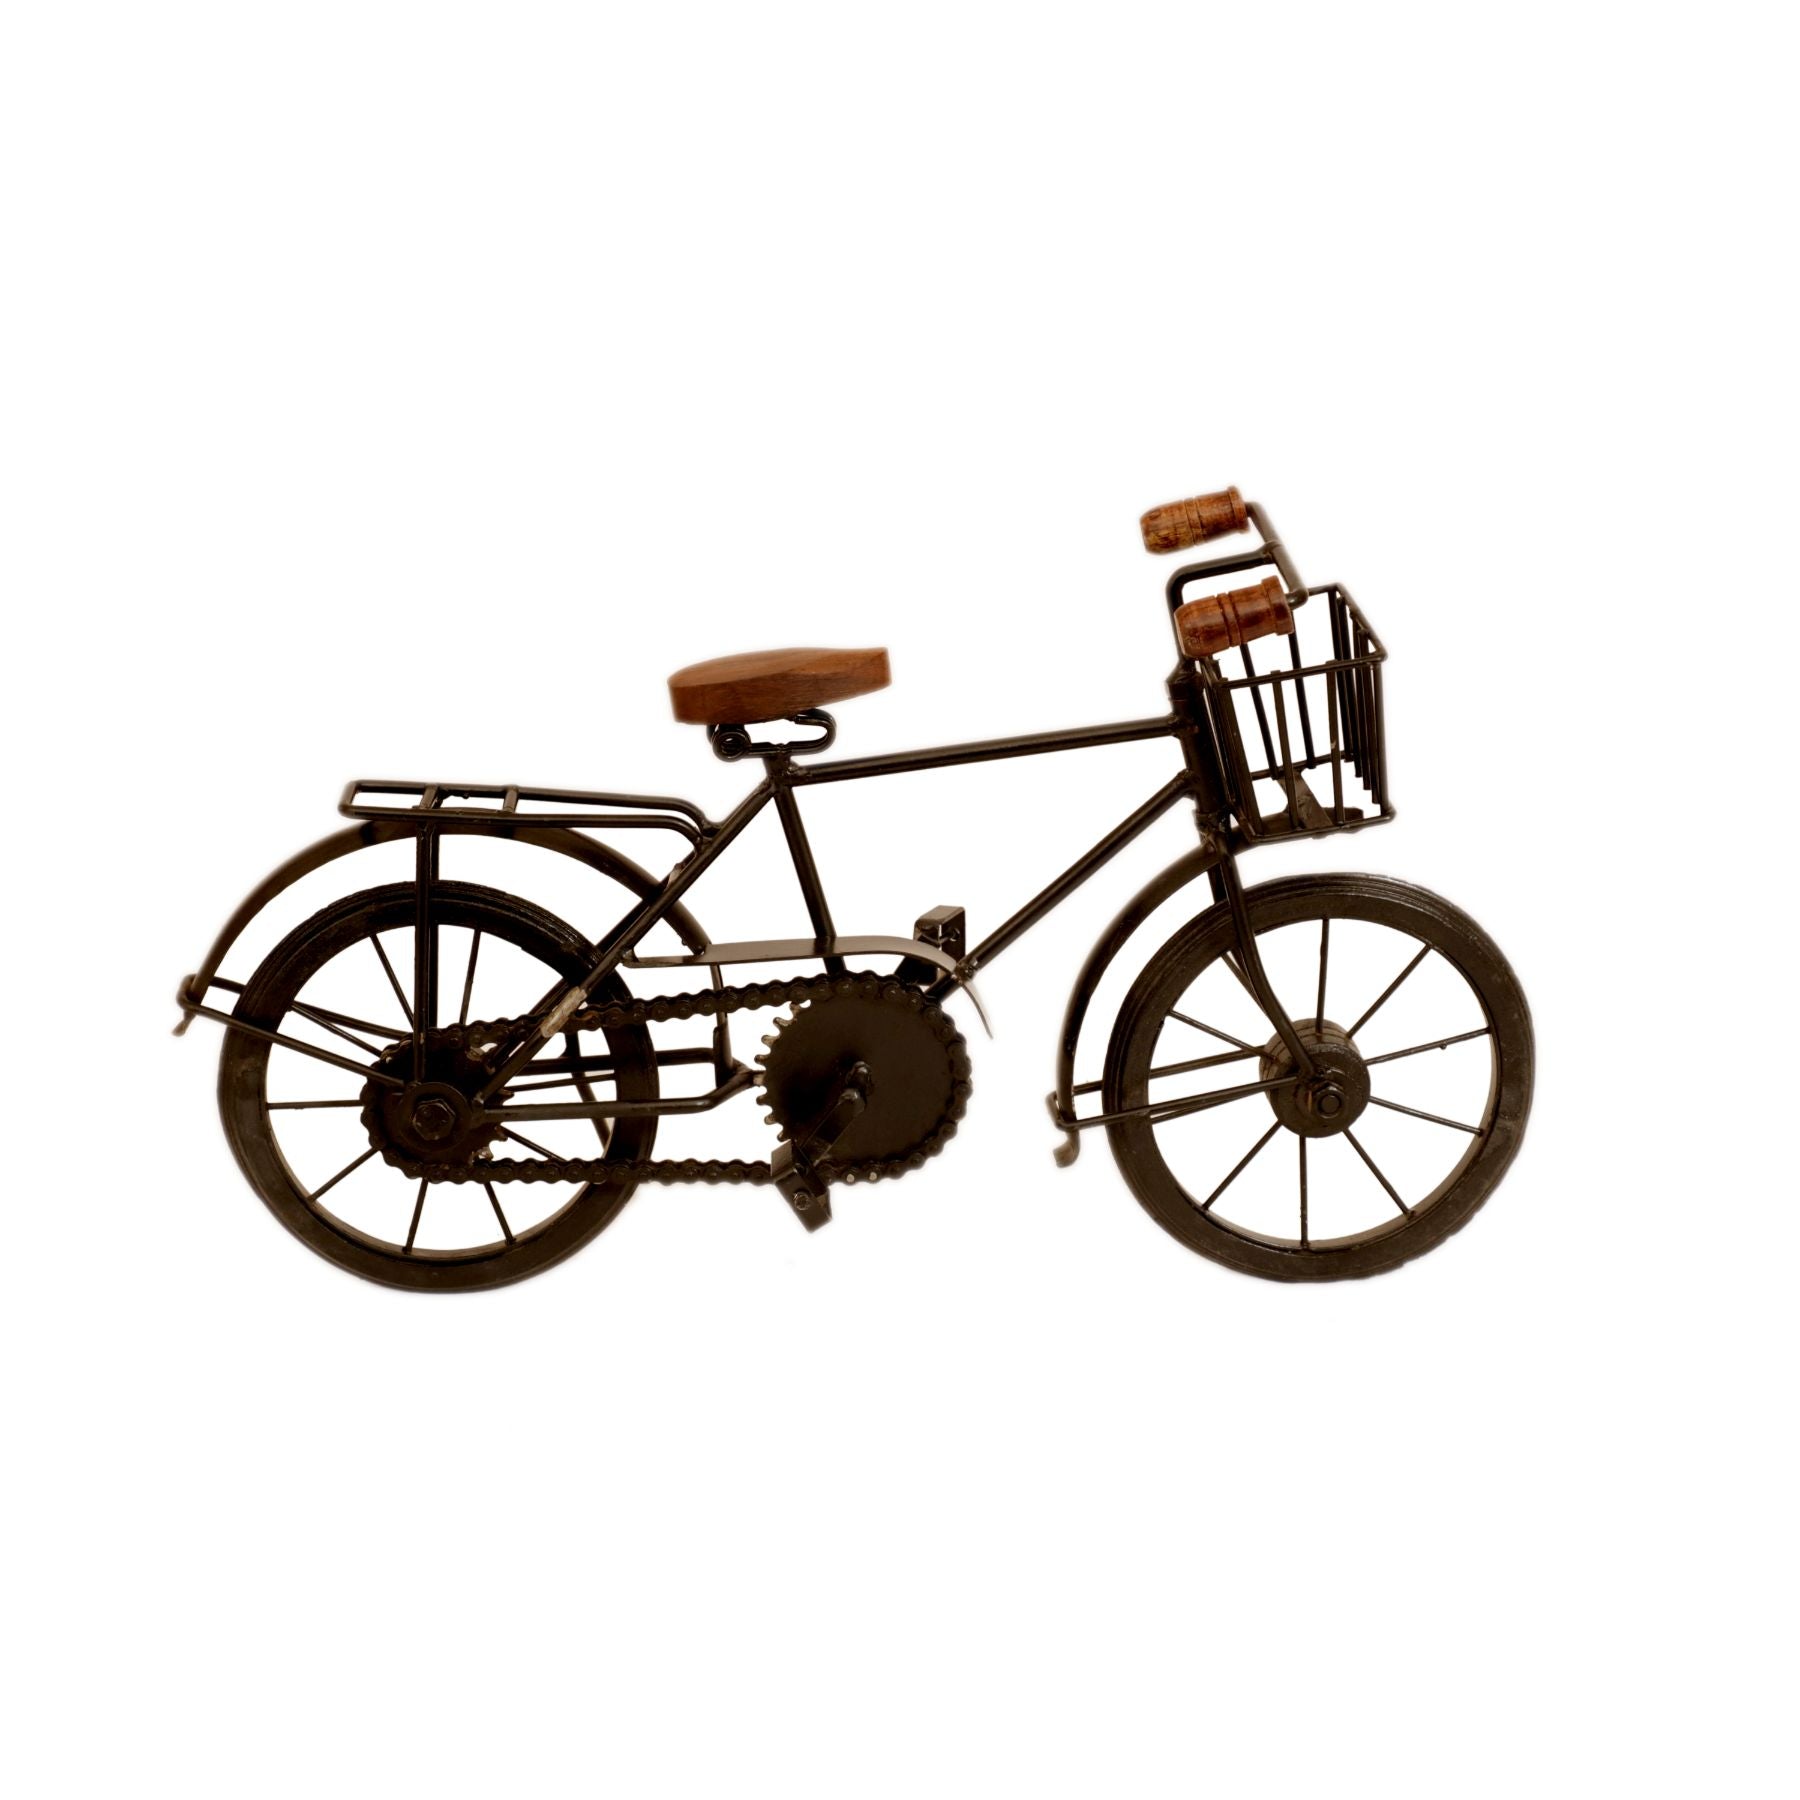 Iron and Wood Basket Bicycle Vehicle figurine